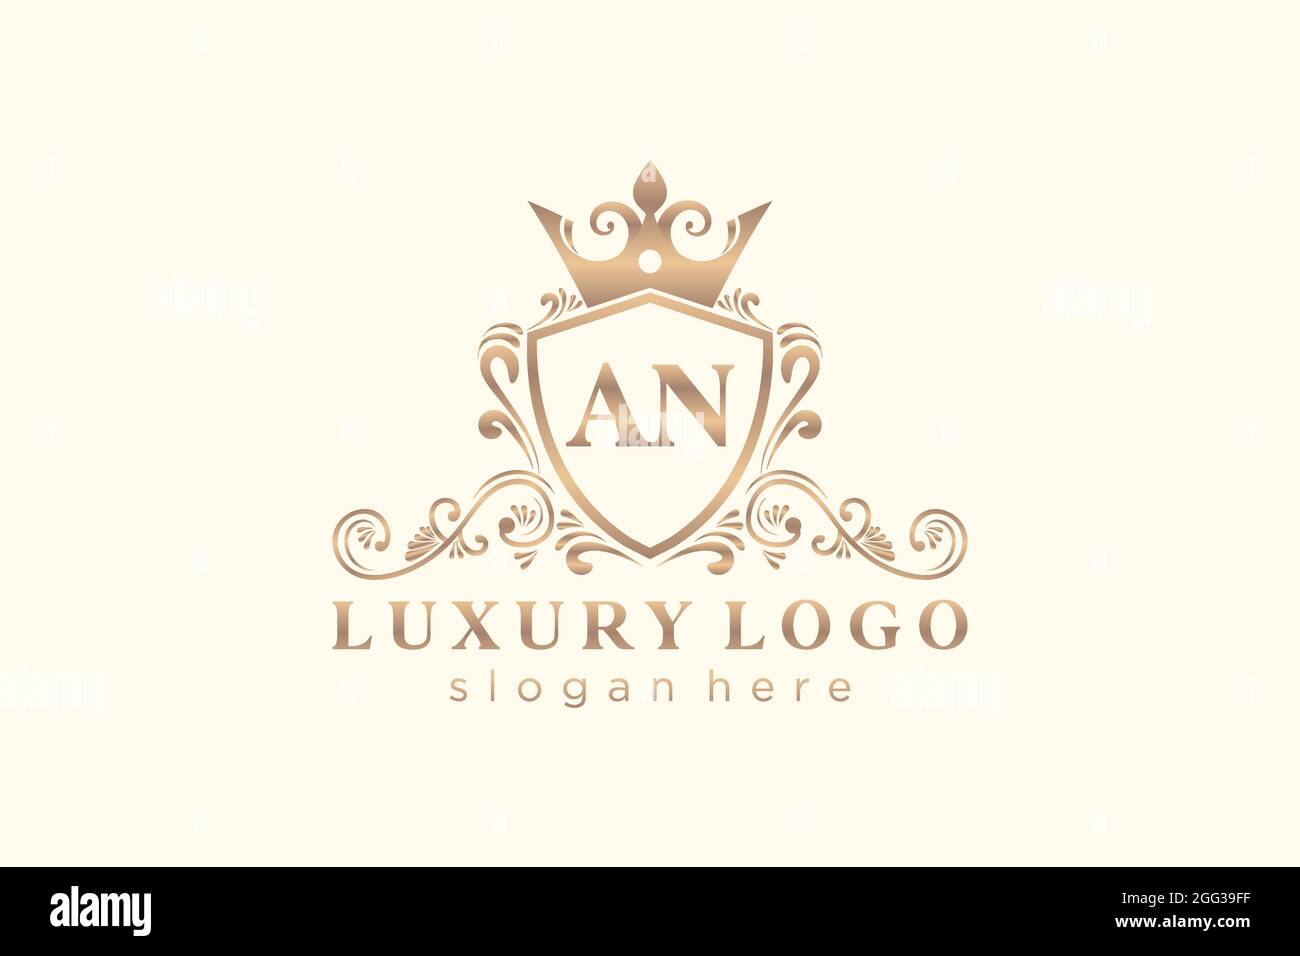 EINE Vorlage mit dem Royal Luxury Logo in Vektorgrafik für Restaurant, Royalty, Boutique, Café, Hotel, Heraldisch, Schmuck, Mode und andere Vektor illustrr Stock Vektor